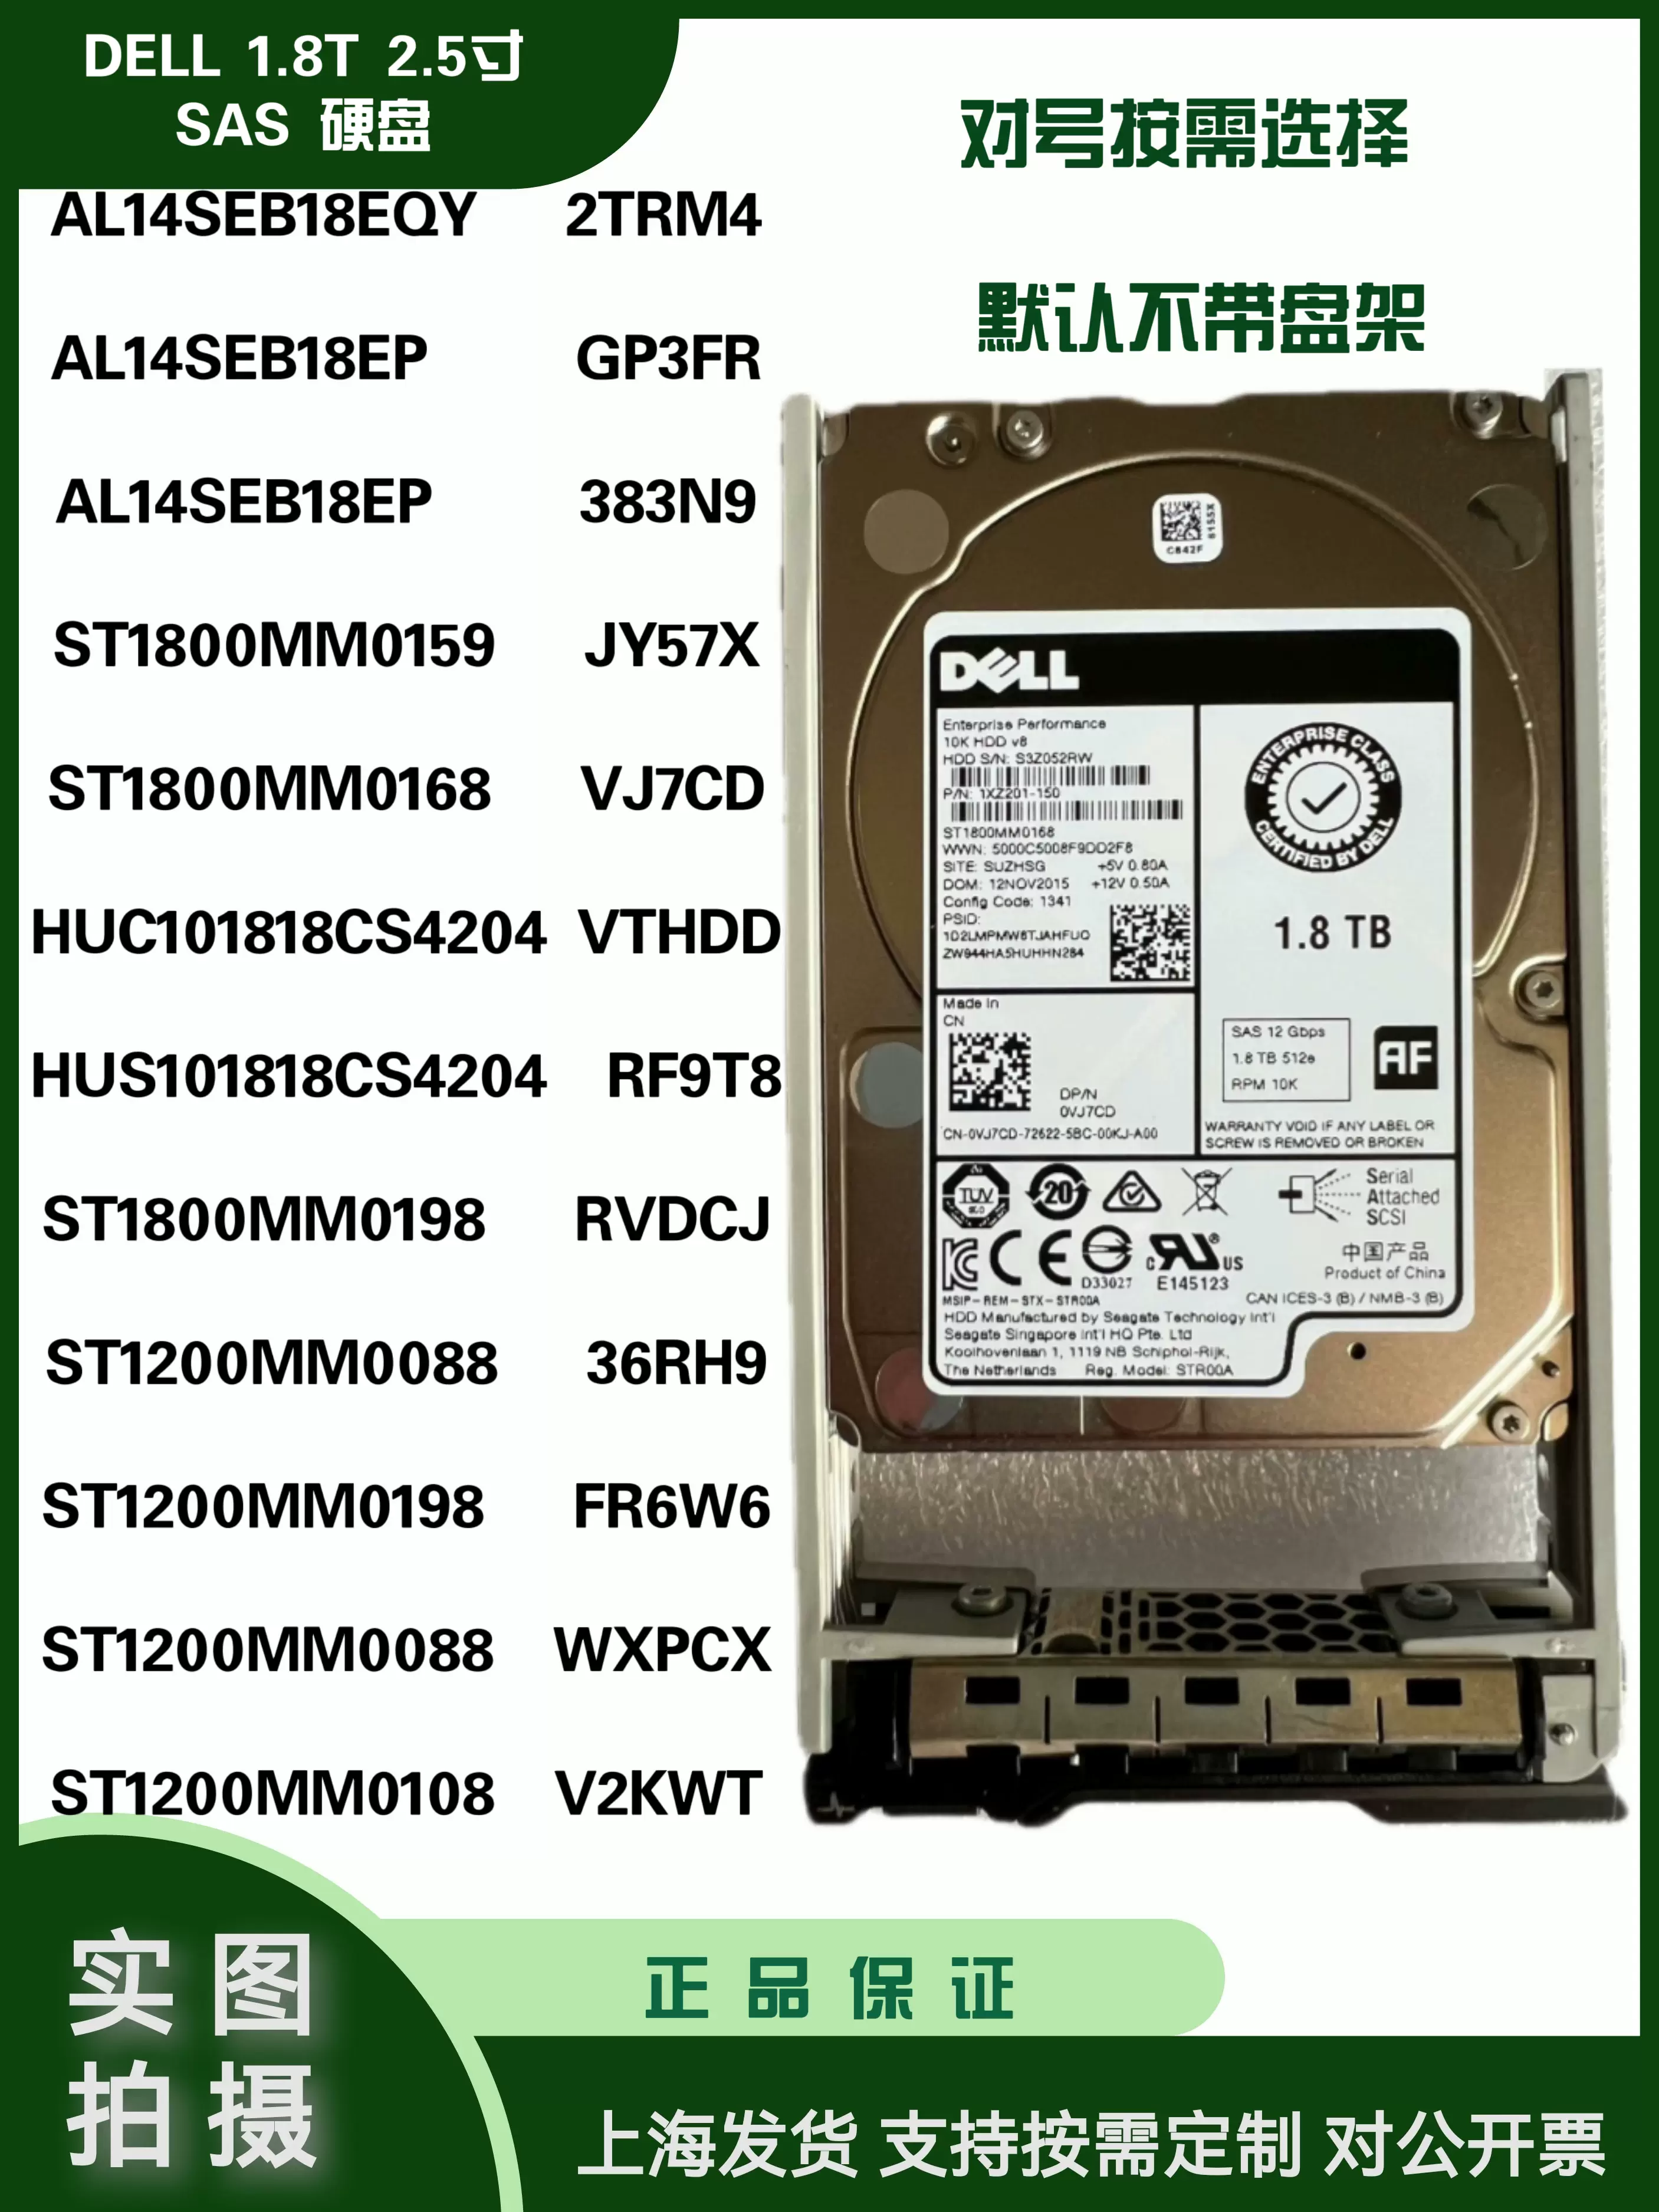 DELL1.8T 2TRM4 GP3FR 383N9 JY57X VJ7CD VTHDD RVDCJ 0WRRF硬盘 